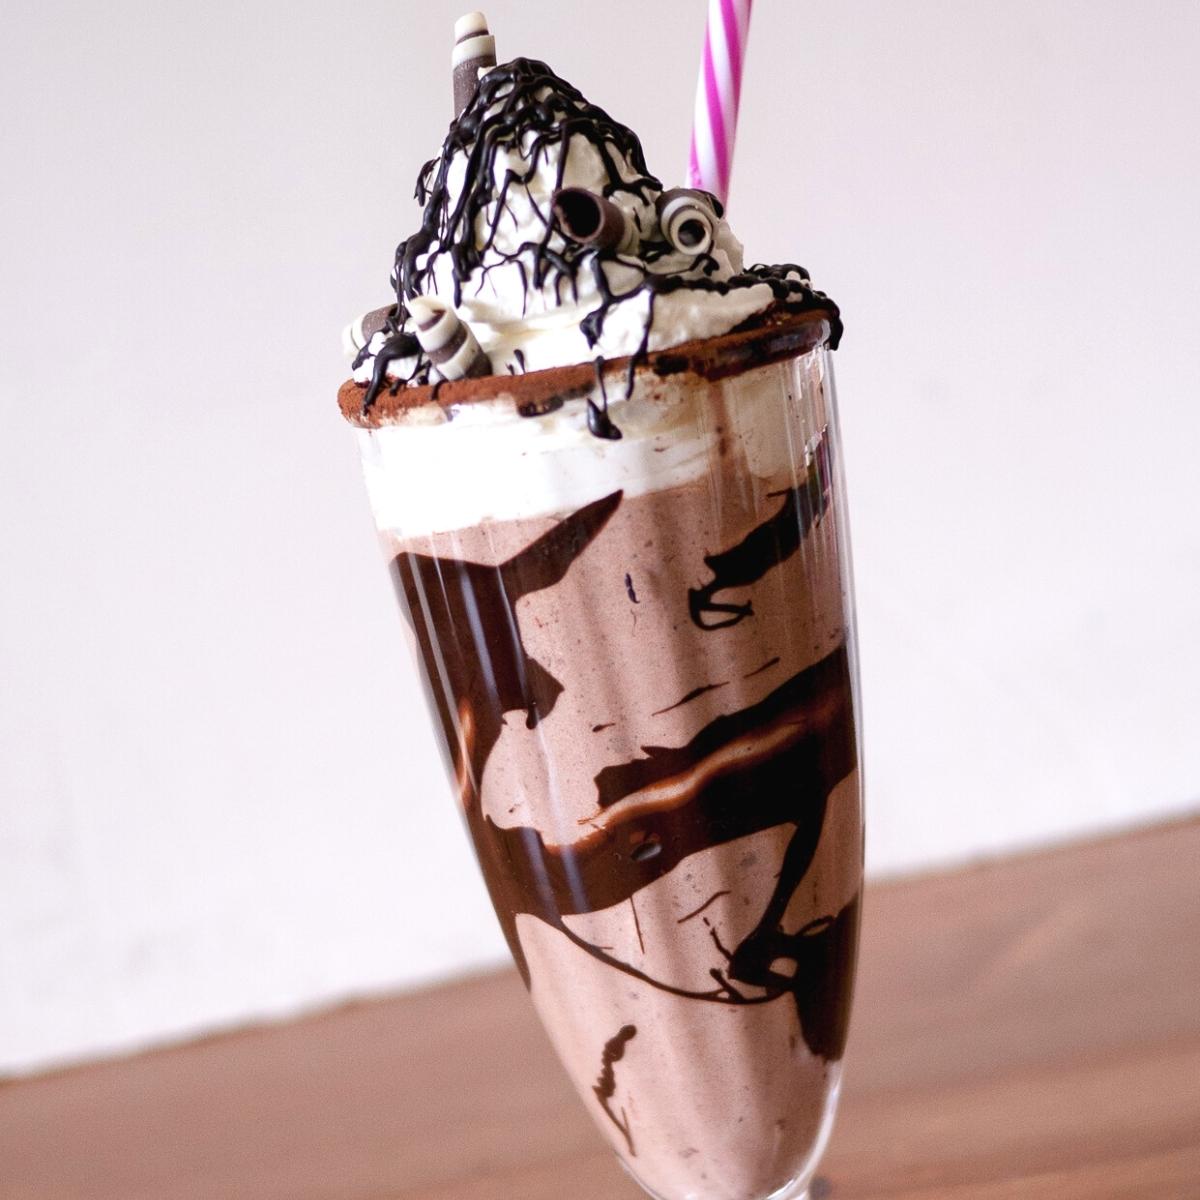 A milkshake with straw